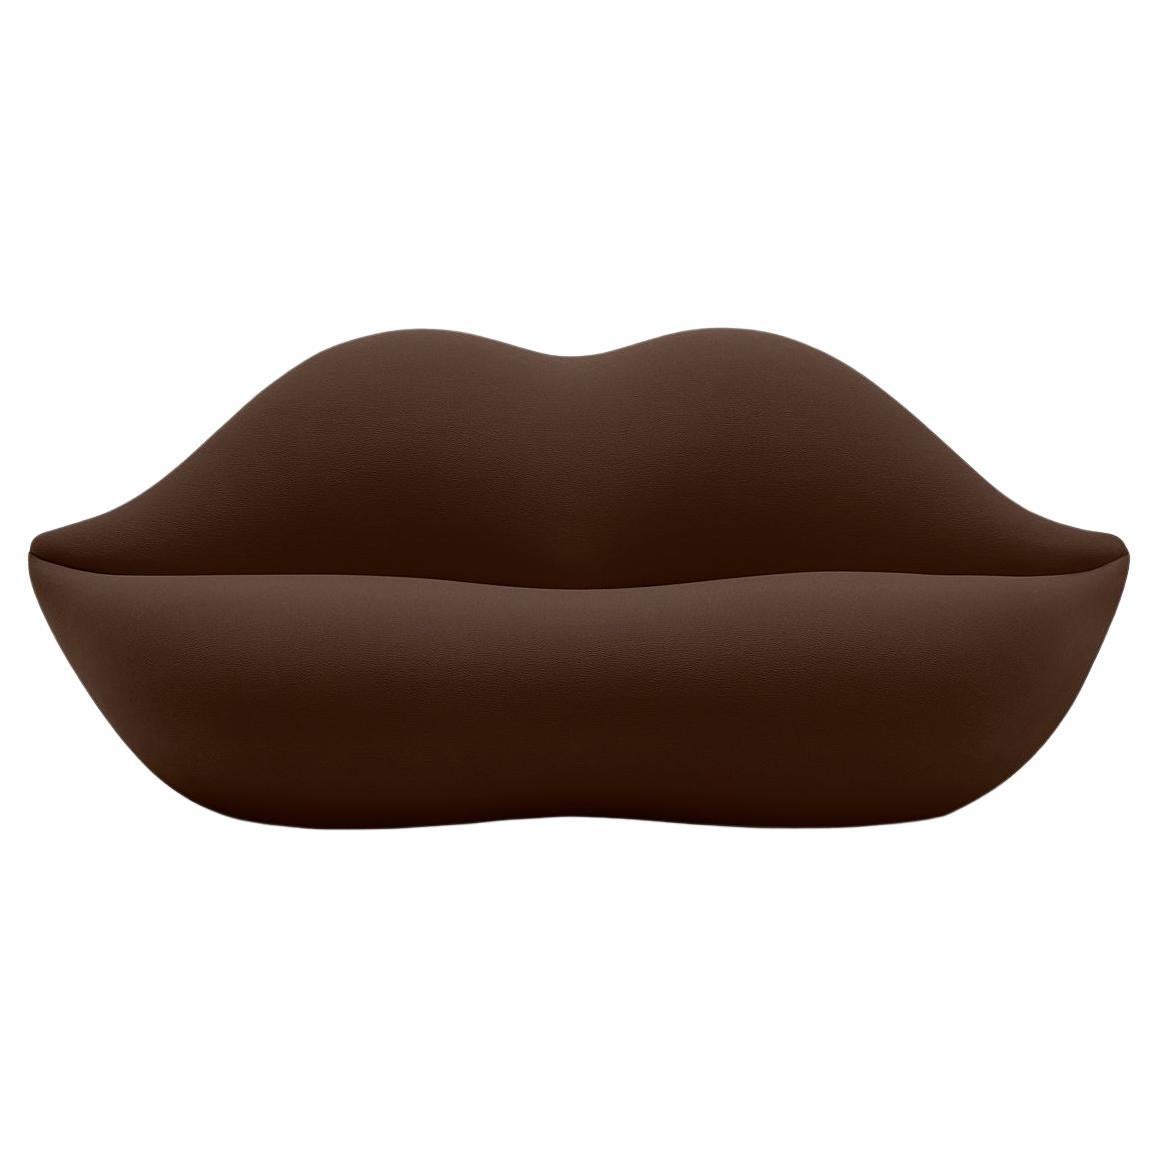 Gufram, canapé Bocca en forme de lèvres, chocolat, par Studio 65